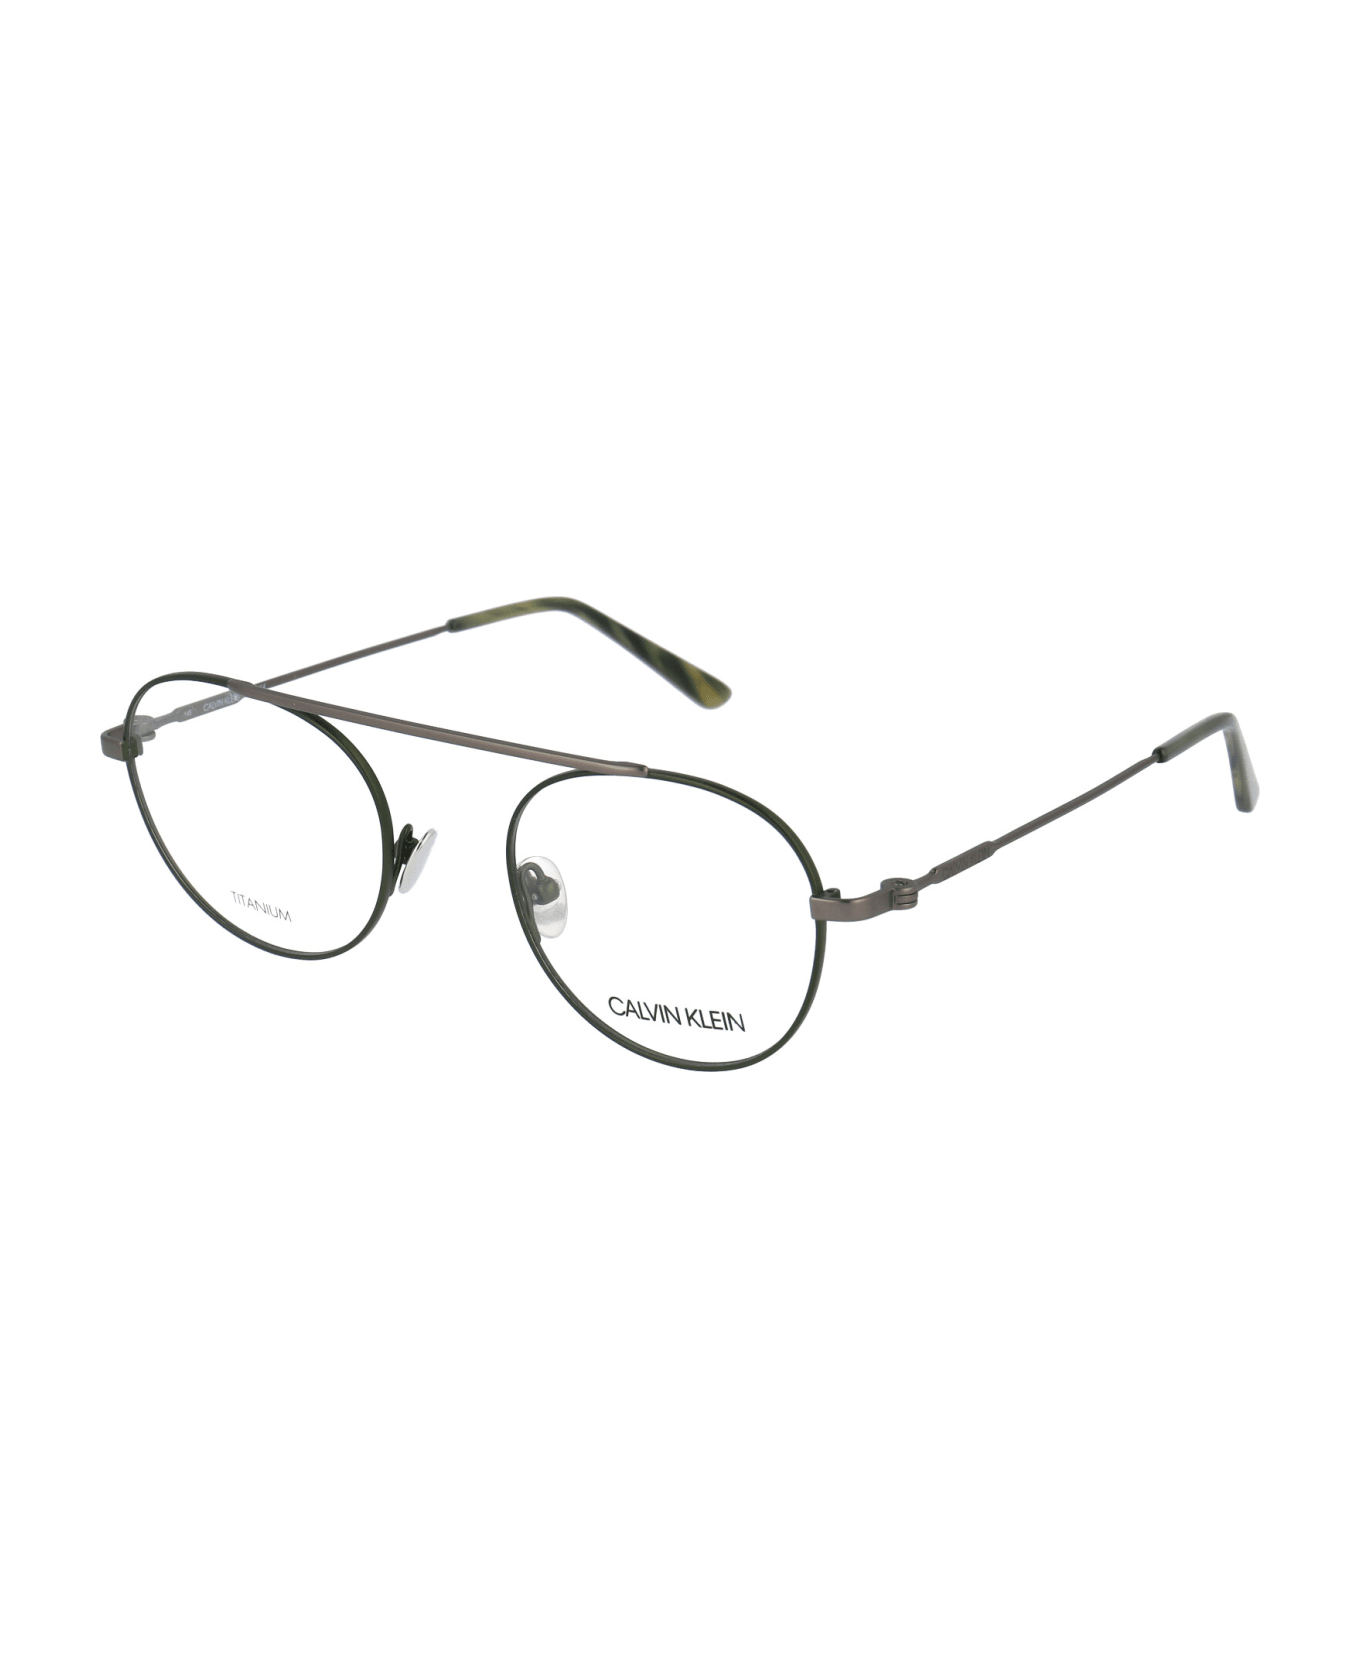 Calvin Klein Ck19151 Glasses - 306 MATTE HUNTER アイウェア